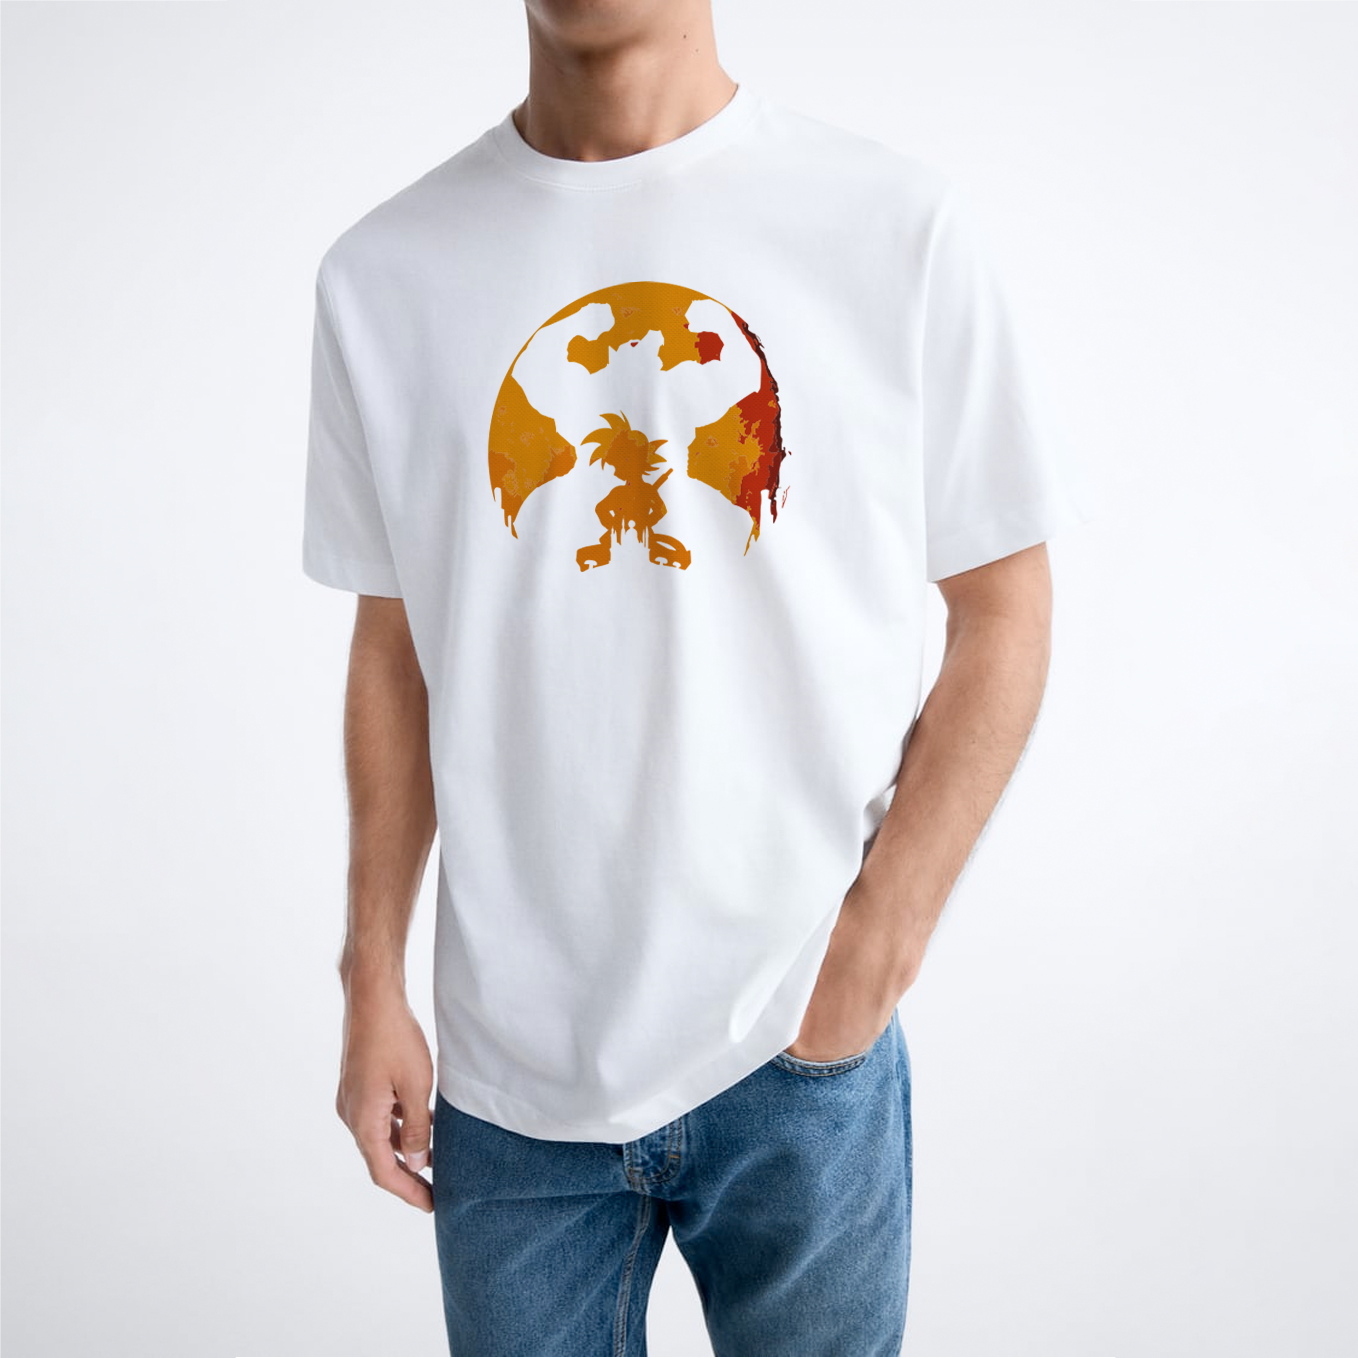 T-shirt "Saiyan Spirit"